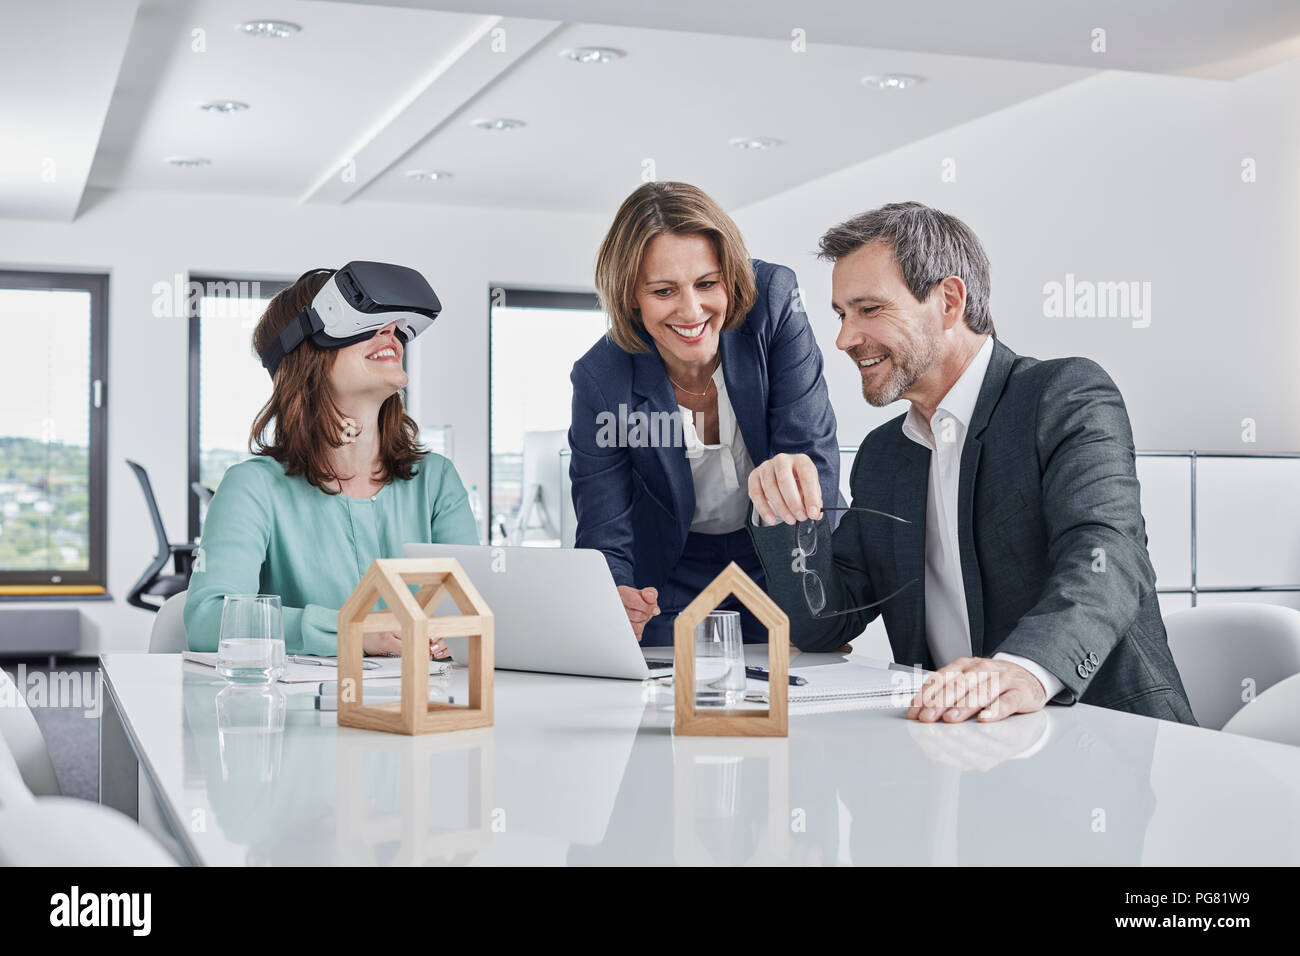 Geschäftsleute in einer Sitzung im Büro mit VR-Brille, Laptop und architektonische Modelle Stockfoto